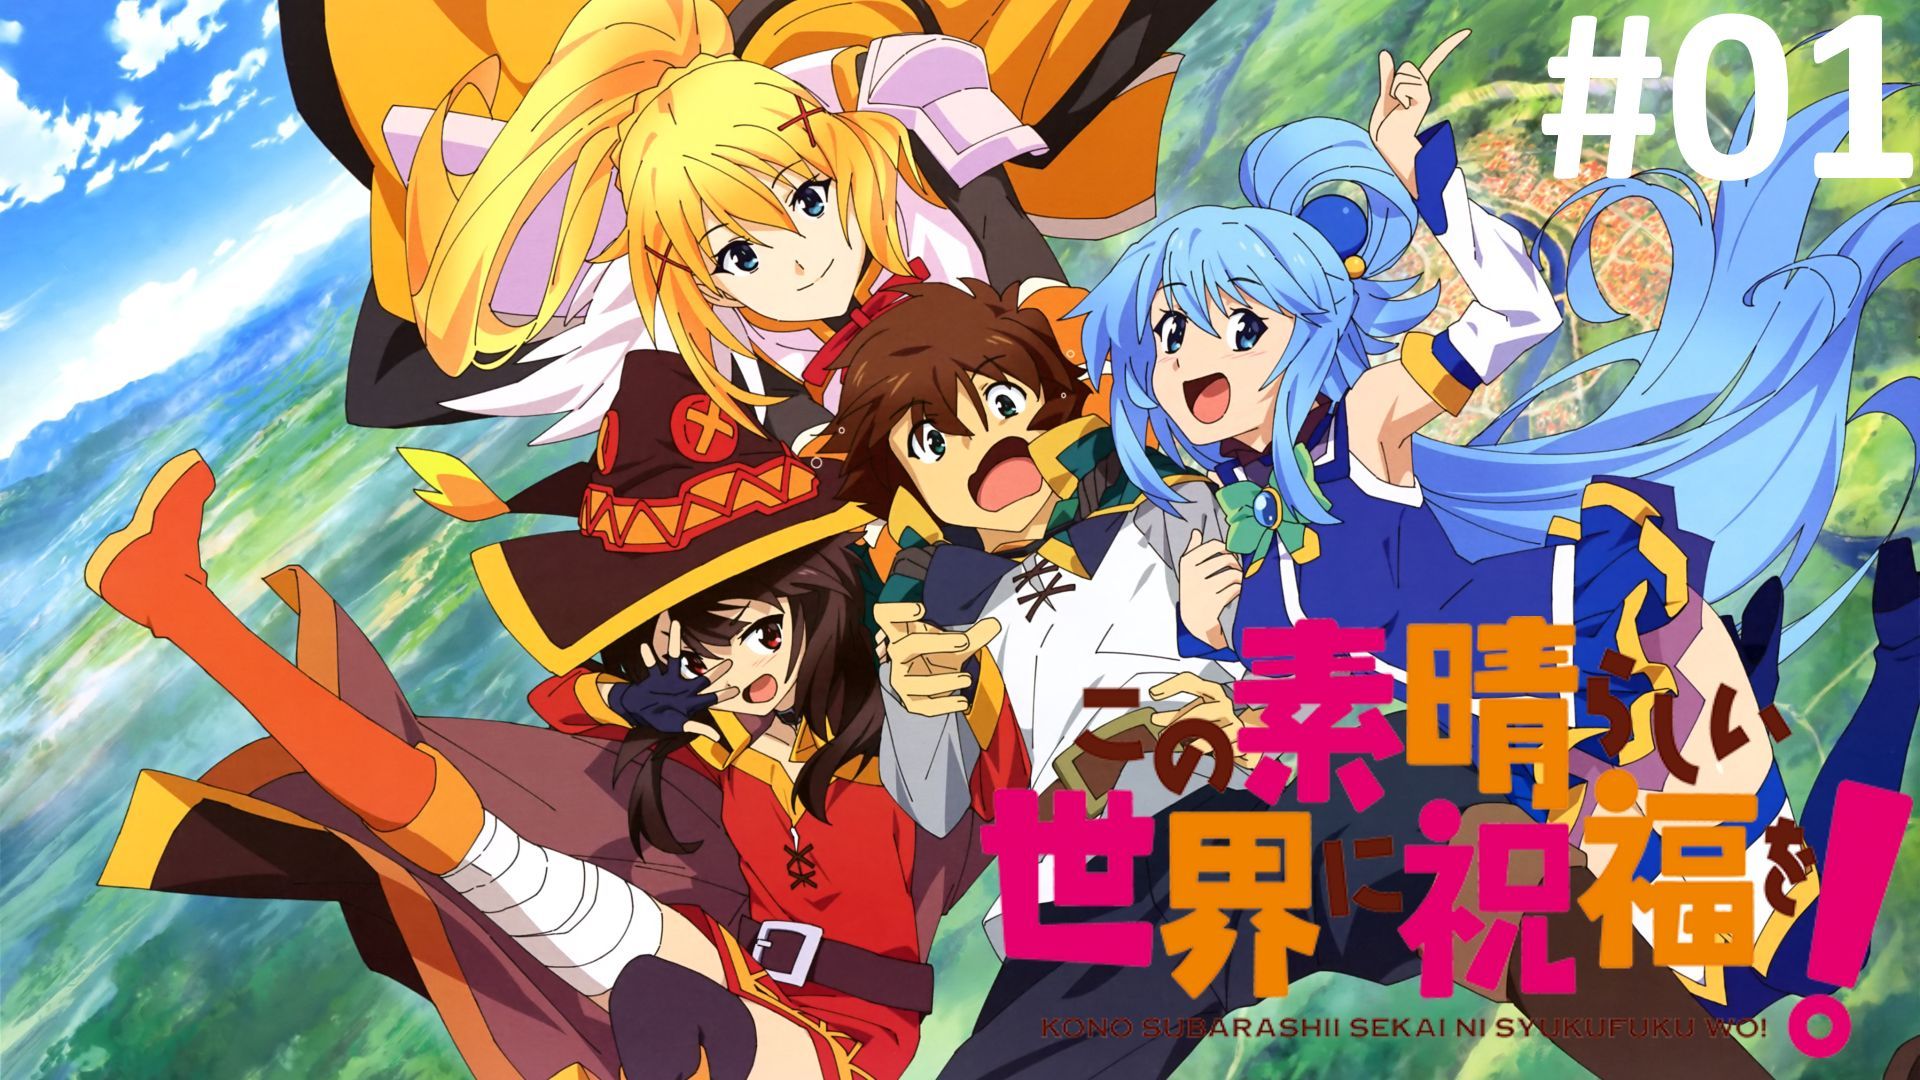 12 x 15 Kono Subarashii Sekai ni Shukufuku wo! 2 KonoSuba Anime Poster  -red